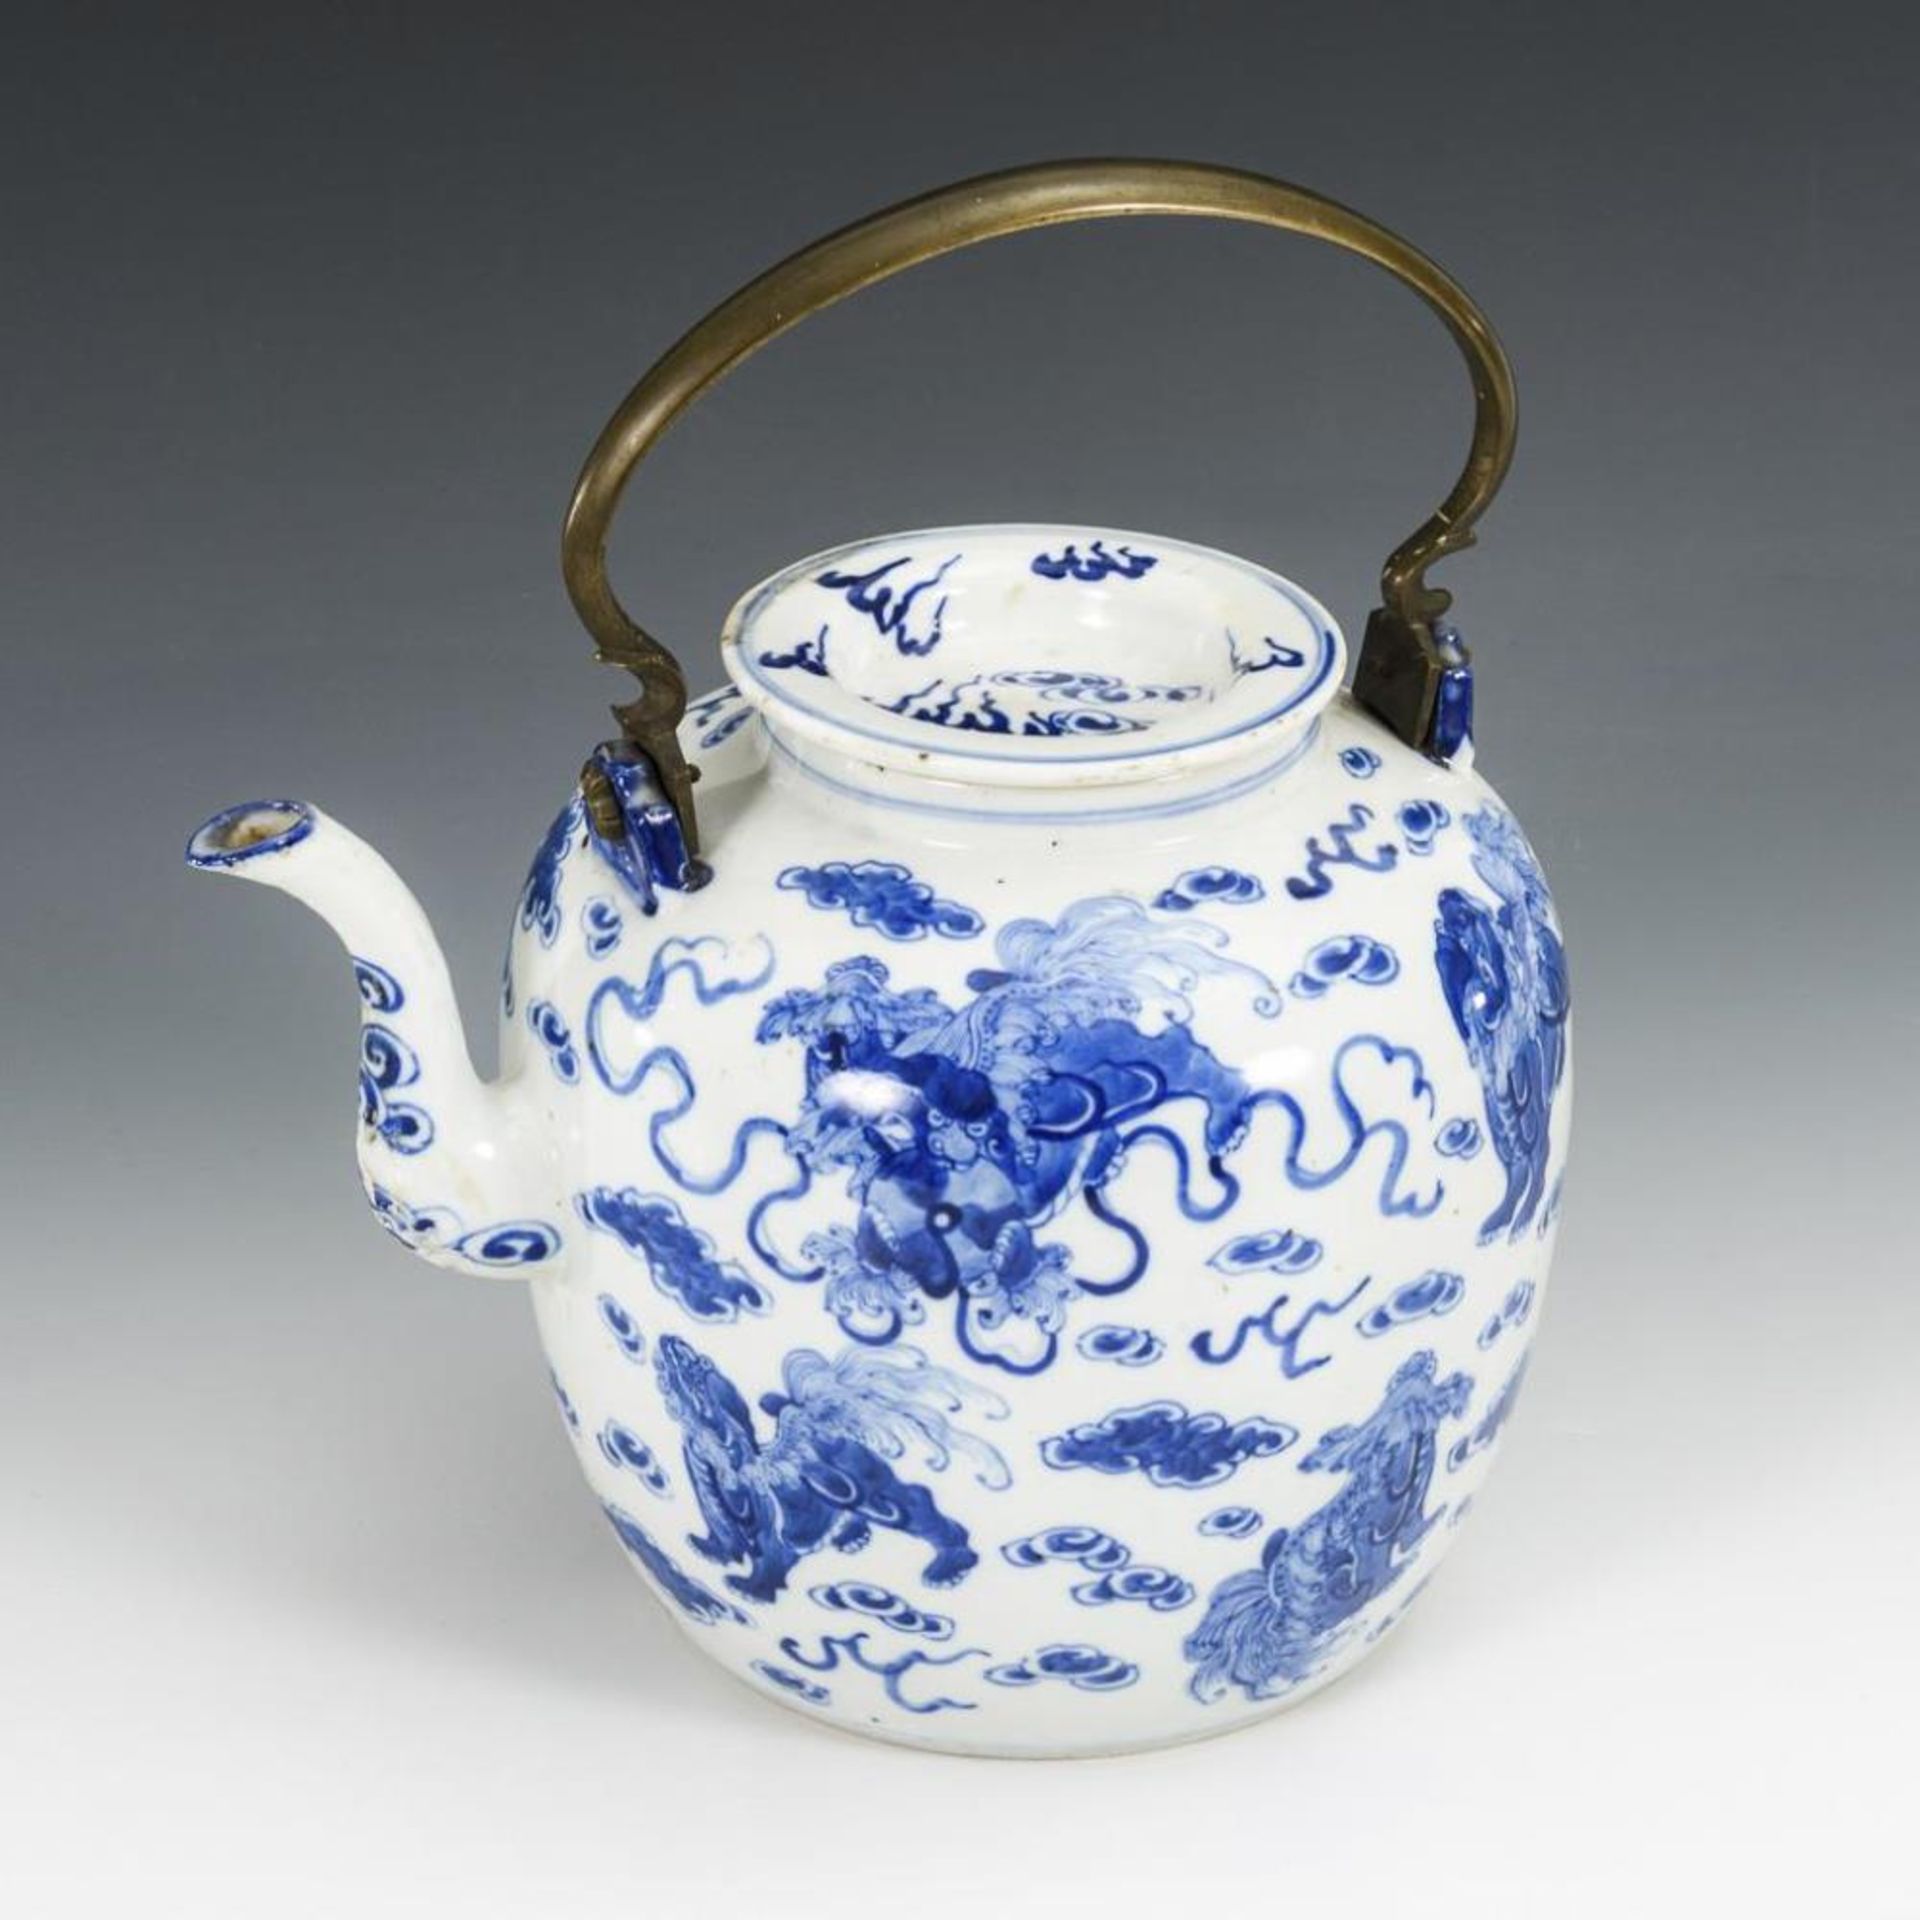 Große Teekanne mit Blaumalerei